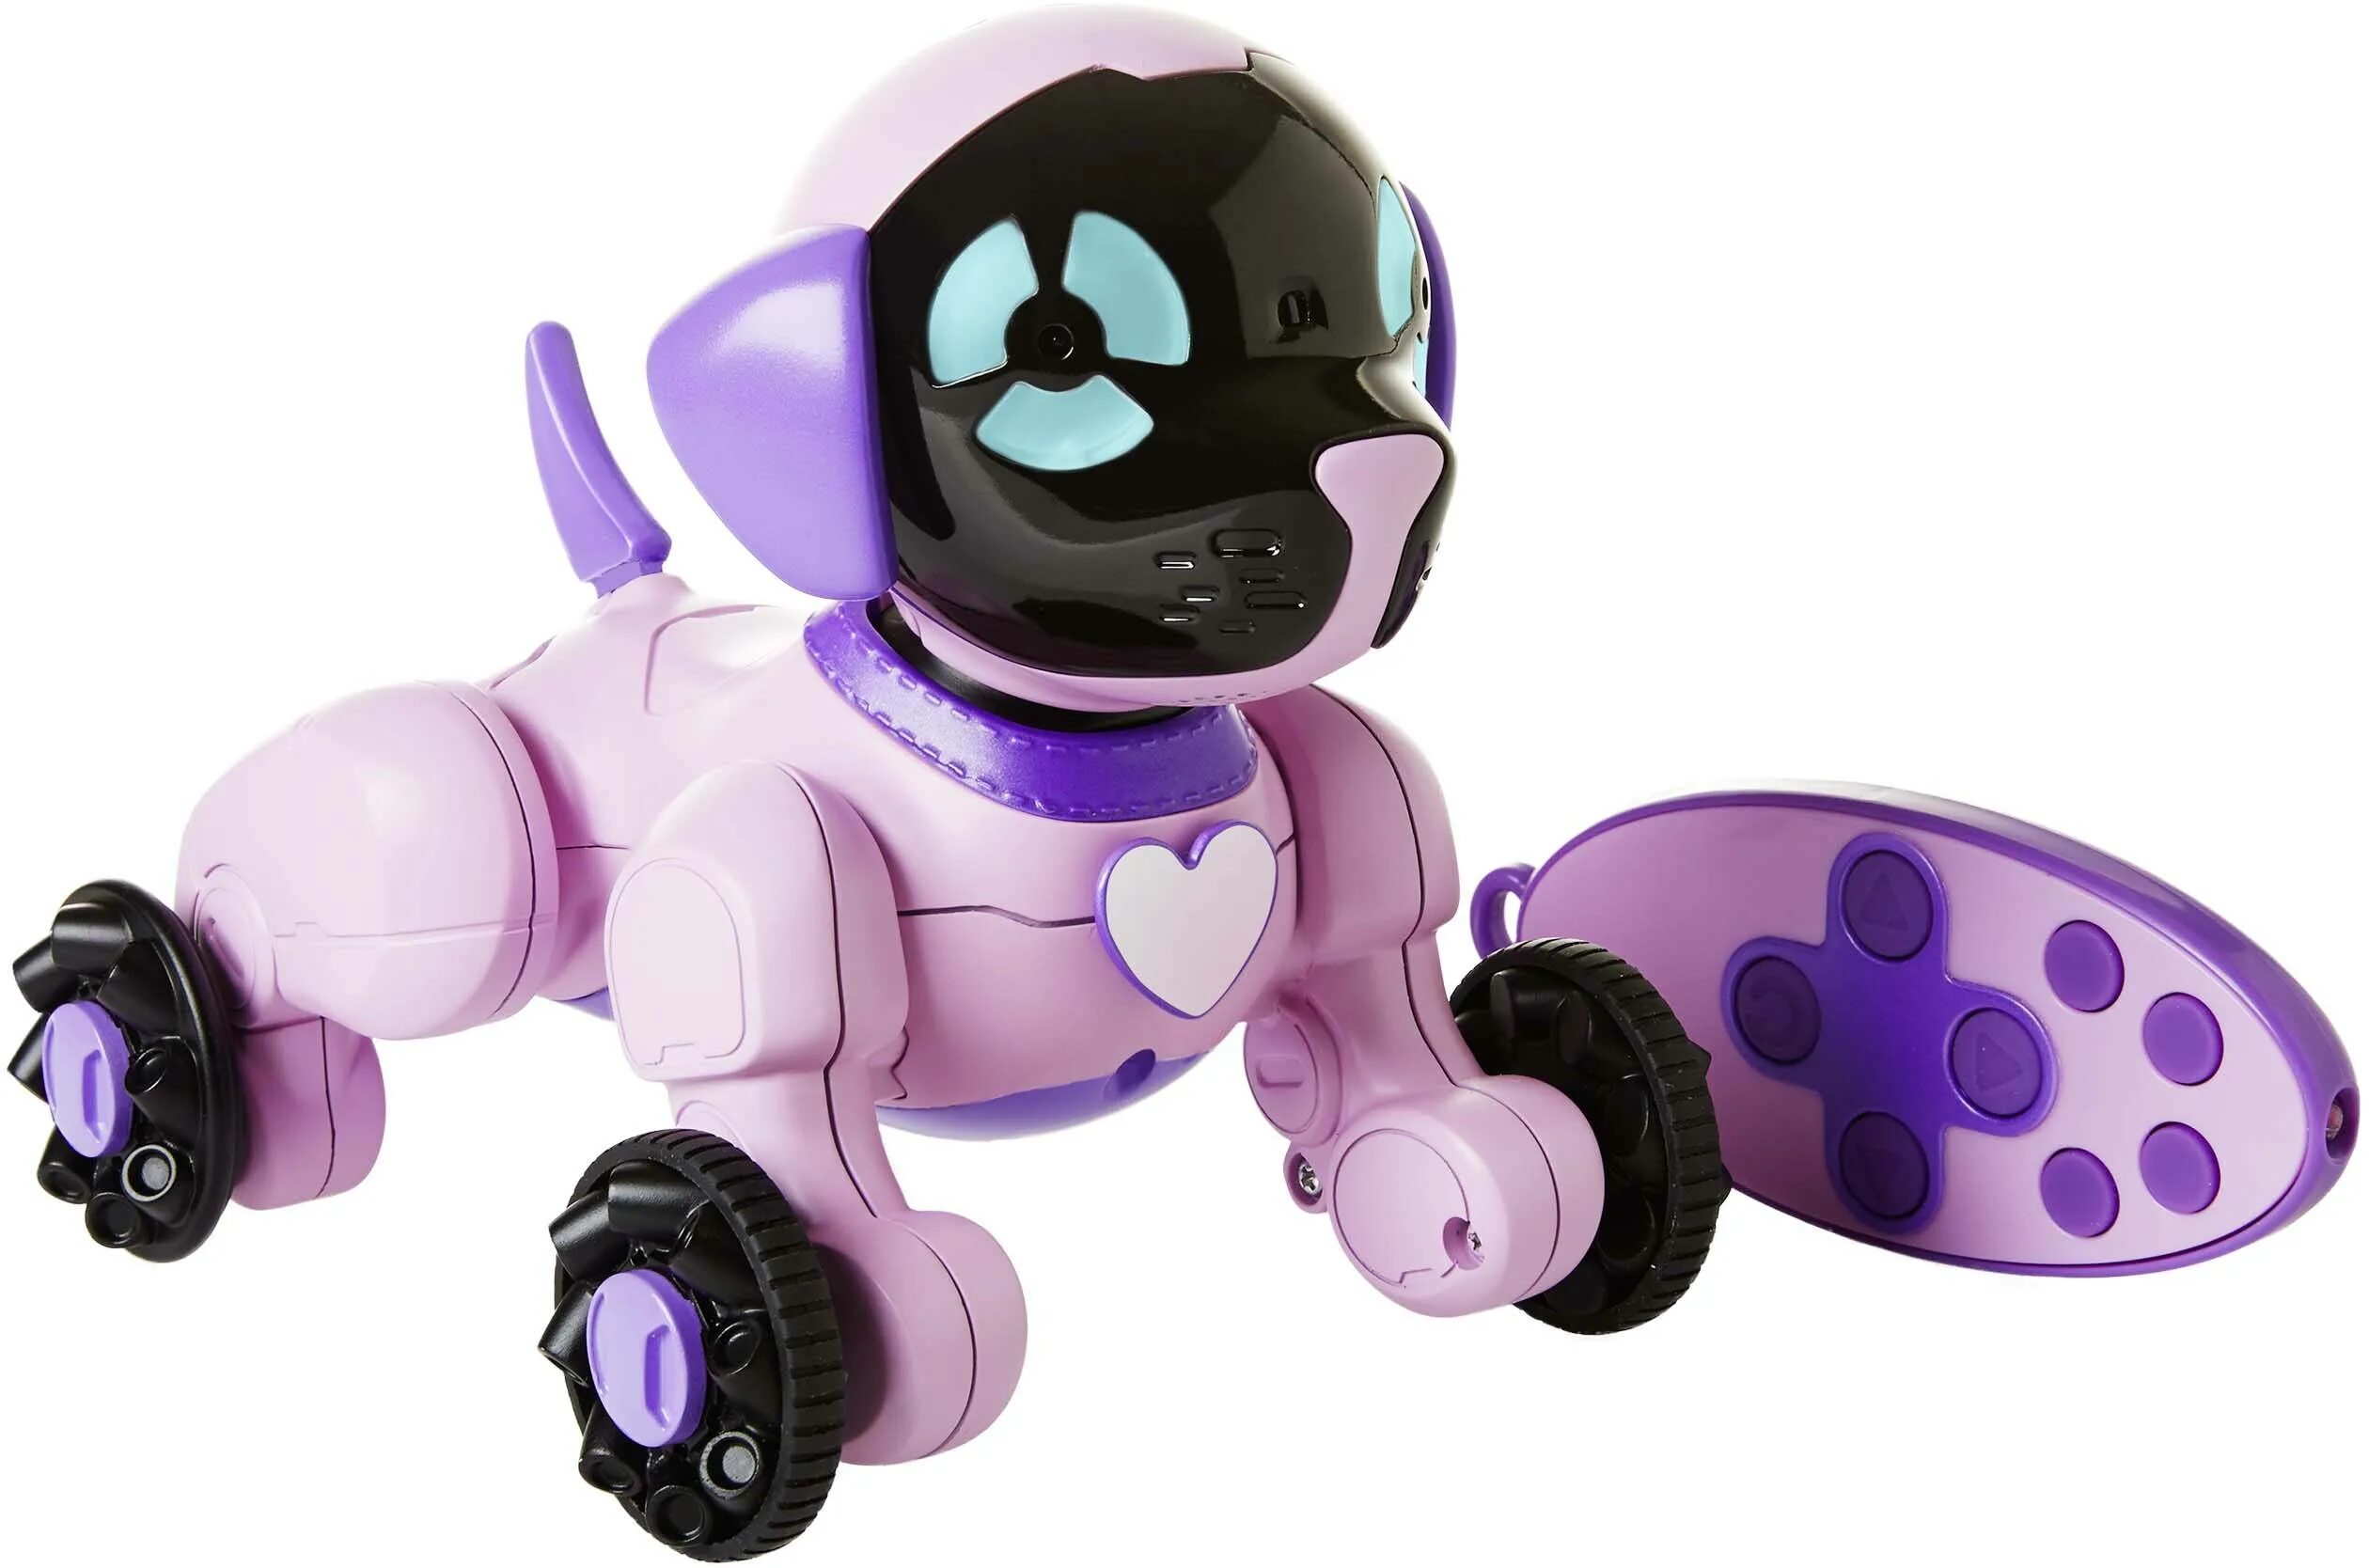 Игрушки нового поколения. Робот WOWWEE собачка Чиппи. Робот WOWWEE Чиппи - голубой. Робот Чиппи розовый. Интерактивная игрушка робот WOWWEE Coji.